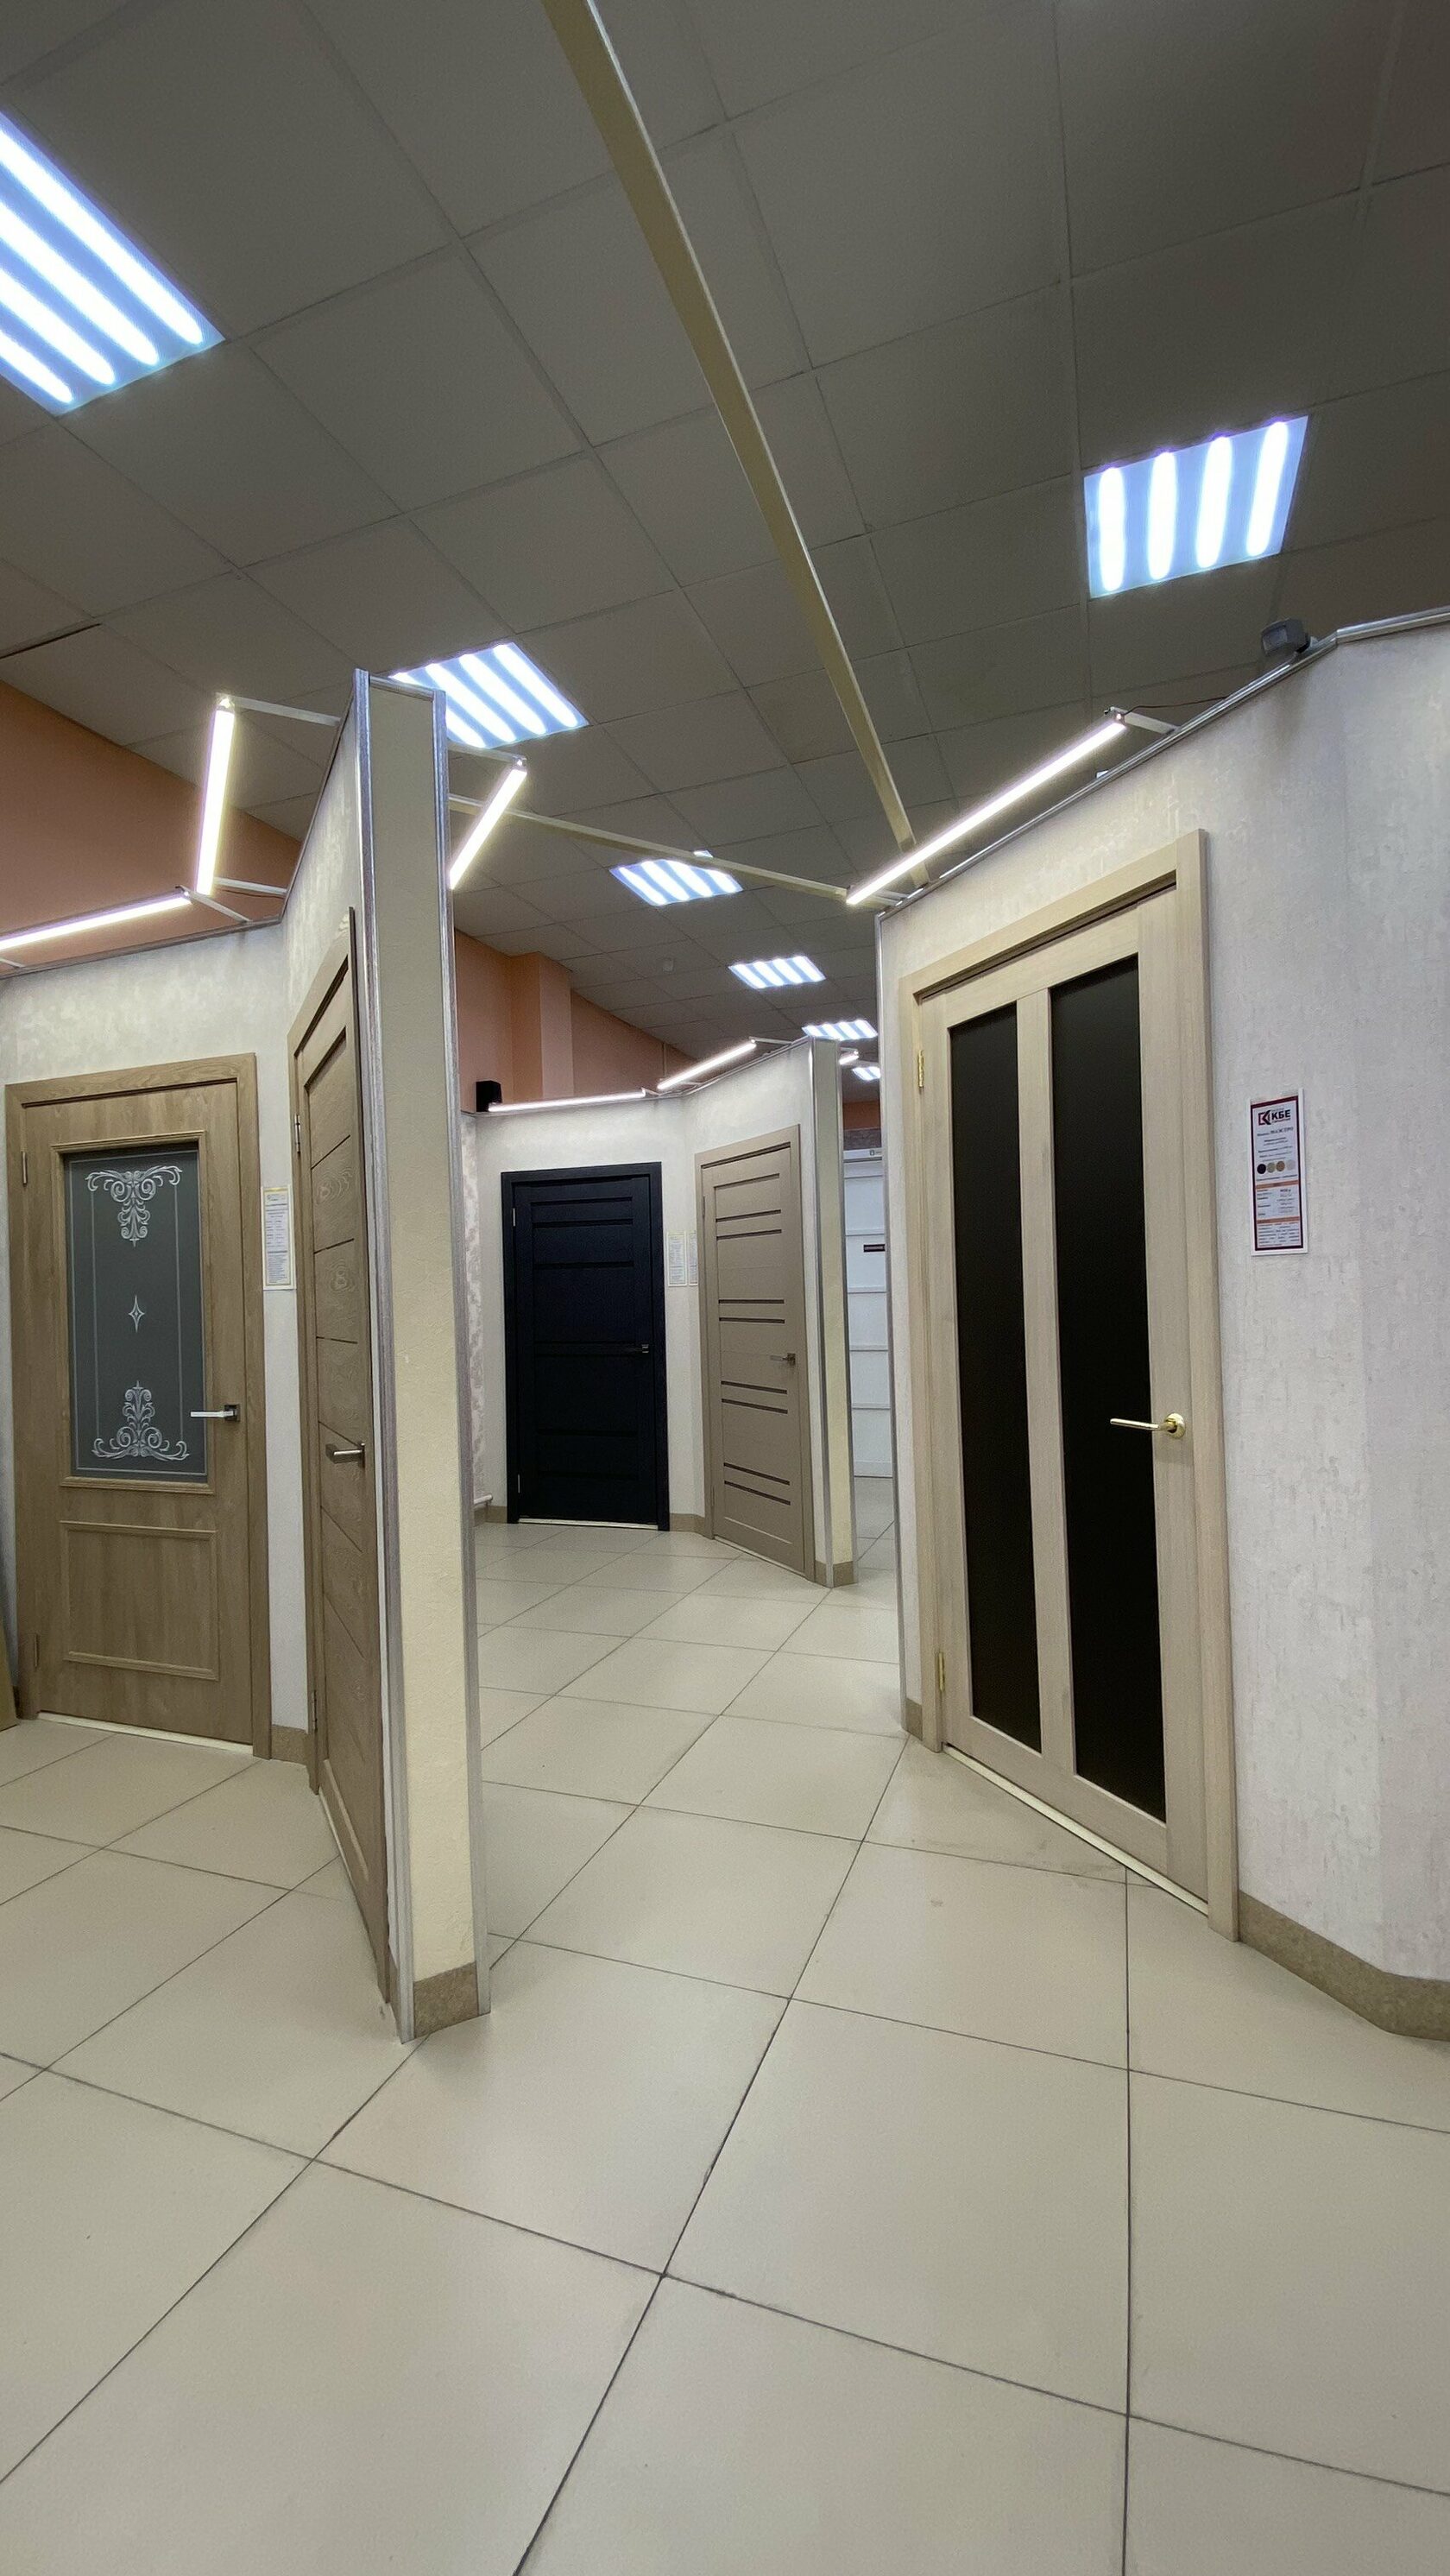 Деревянные двери в туалет и ванную комнату - читайте в блоге Door Loft